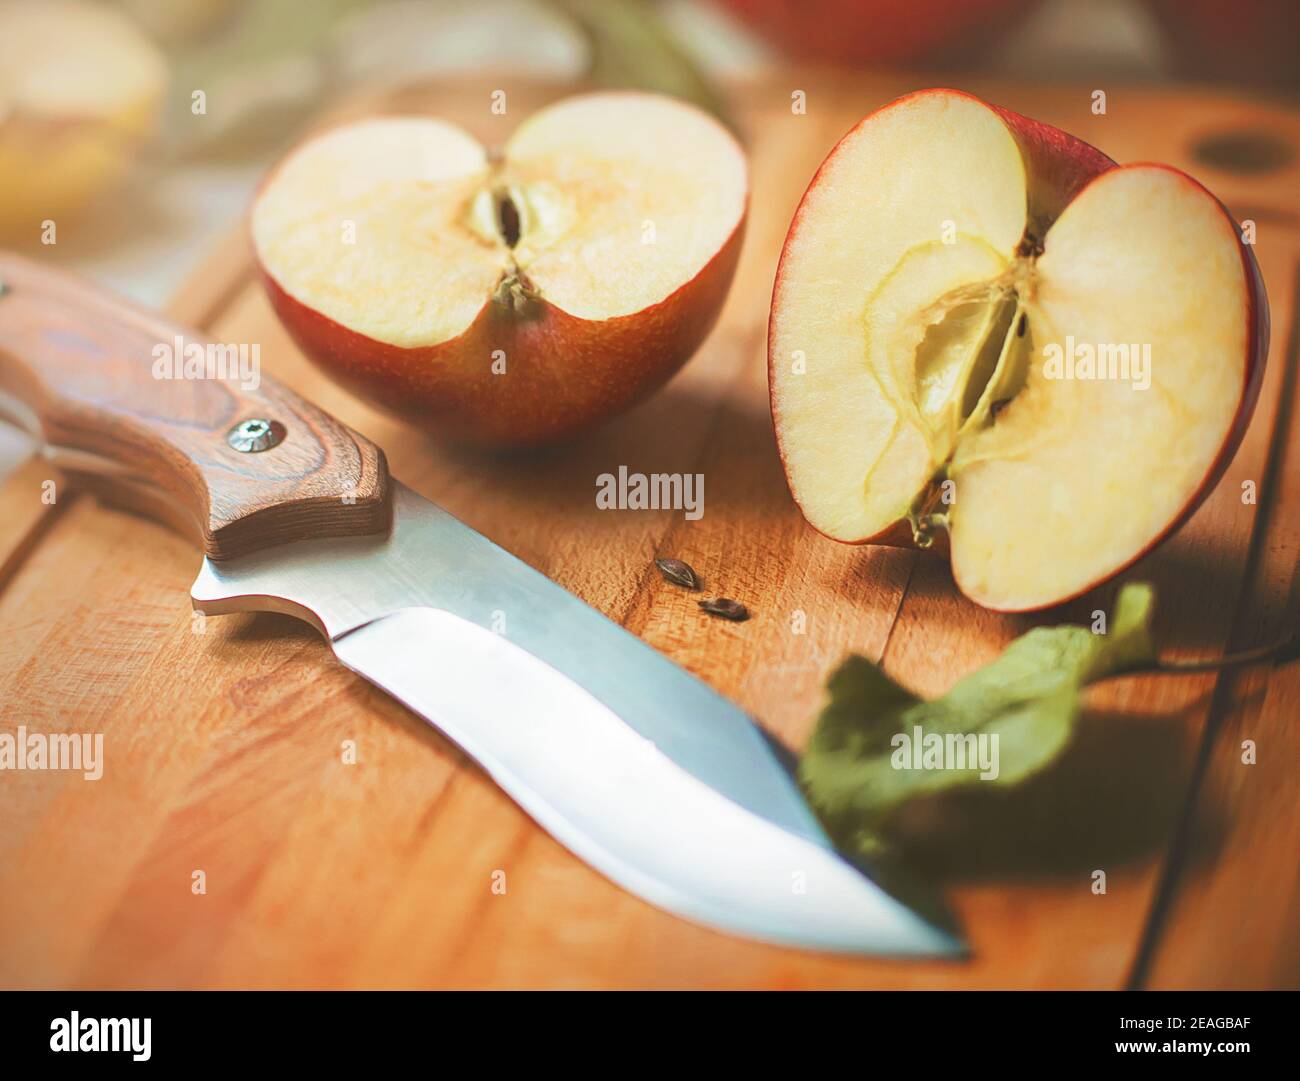 Una mela succosa rossa matura è stata tagliata con un coltello affilato e le sue metà giacciono su una tavola da cucina in legno, illuminata alla luce del sole in una giornata estiva. Har Foto Stock